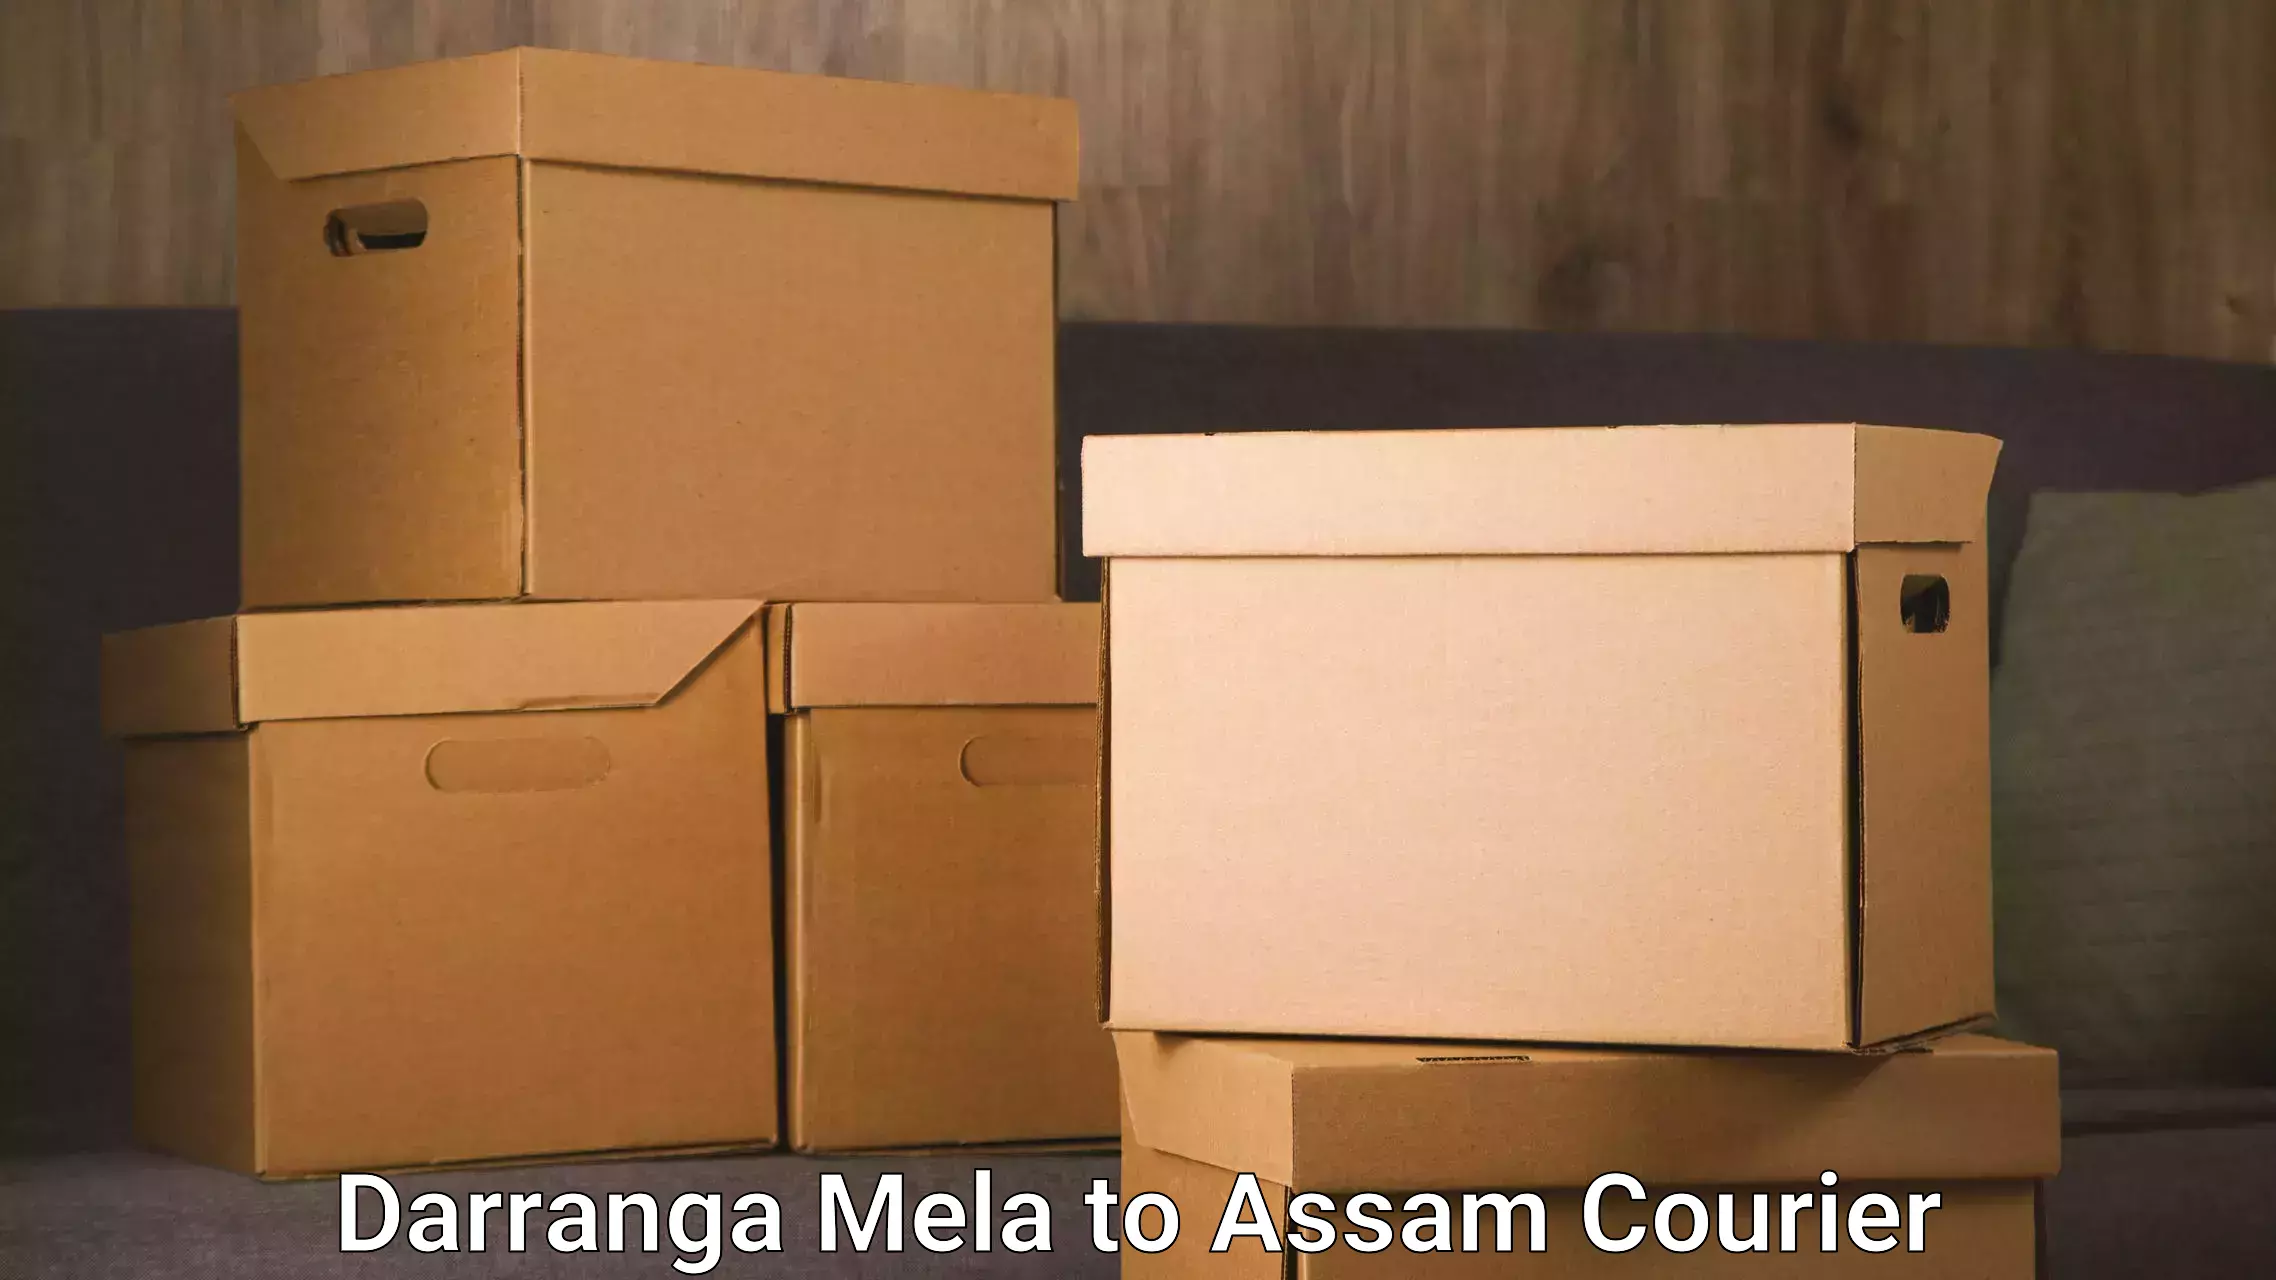 Same-day delivery solutions Darranga Mela to Bhaga